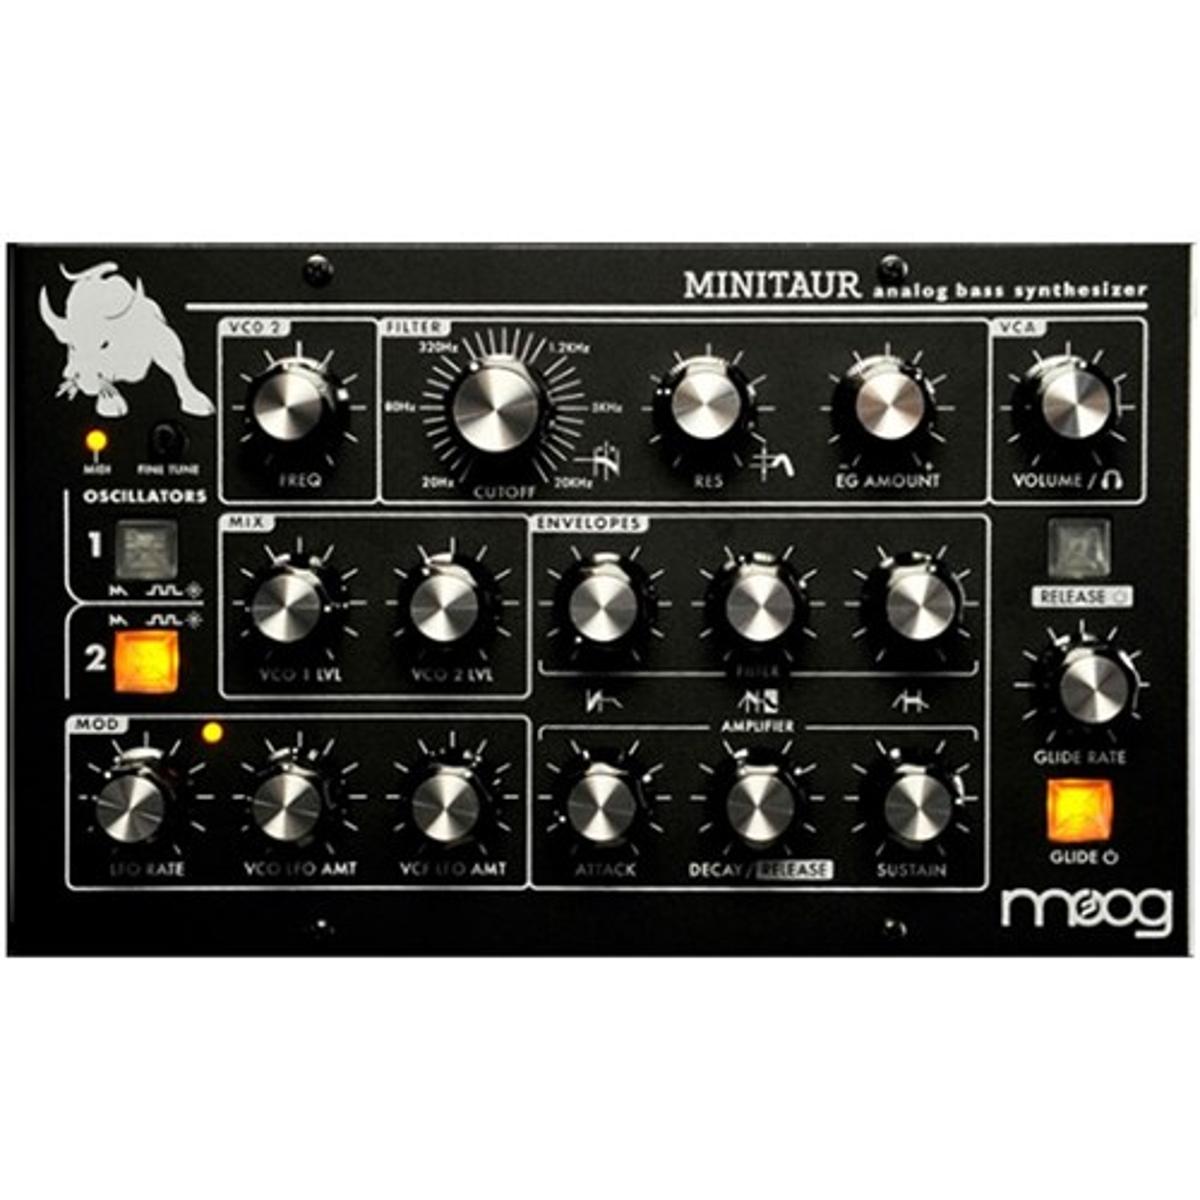 Moog-Minitaur-Analogue-Bass-Synthesizer-Module